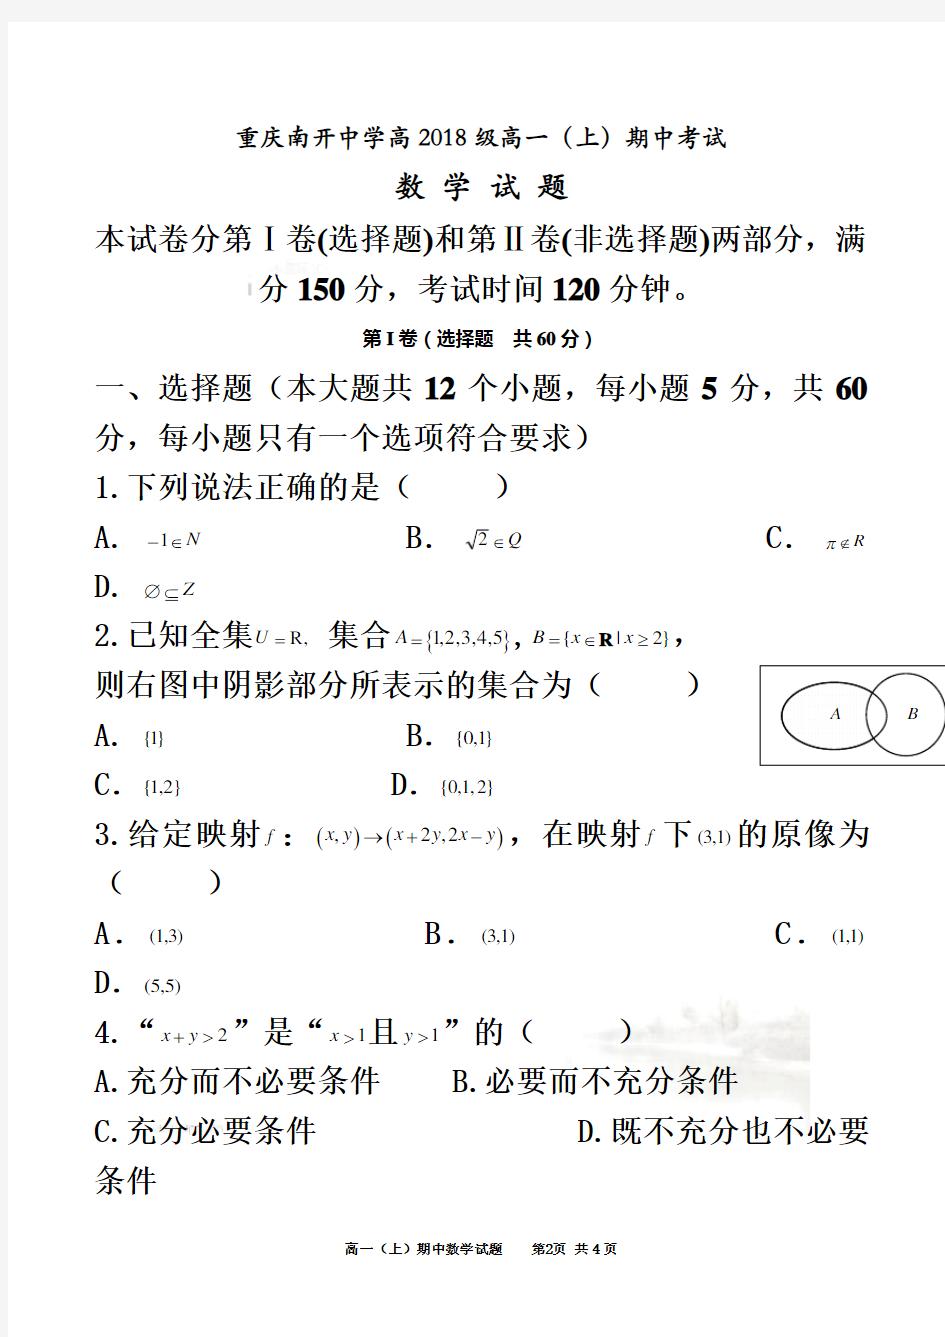 重庆南开中学高2018级高一(上)期中考试数学(试题+答案)